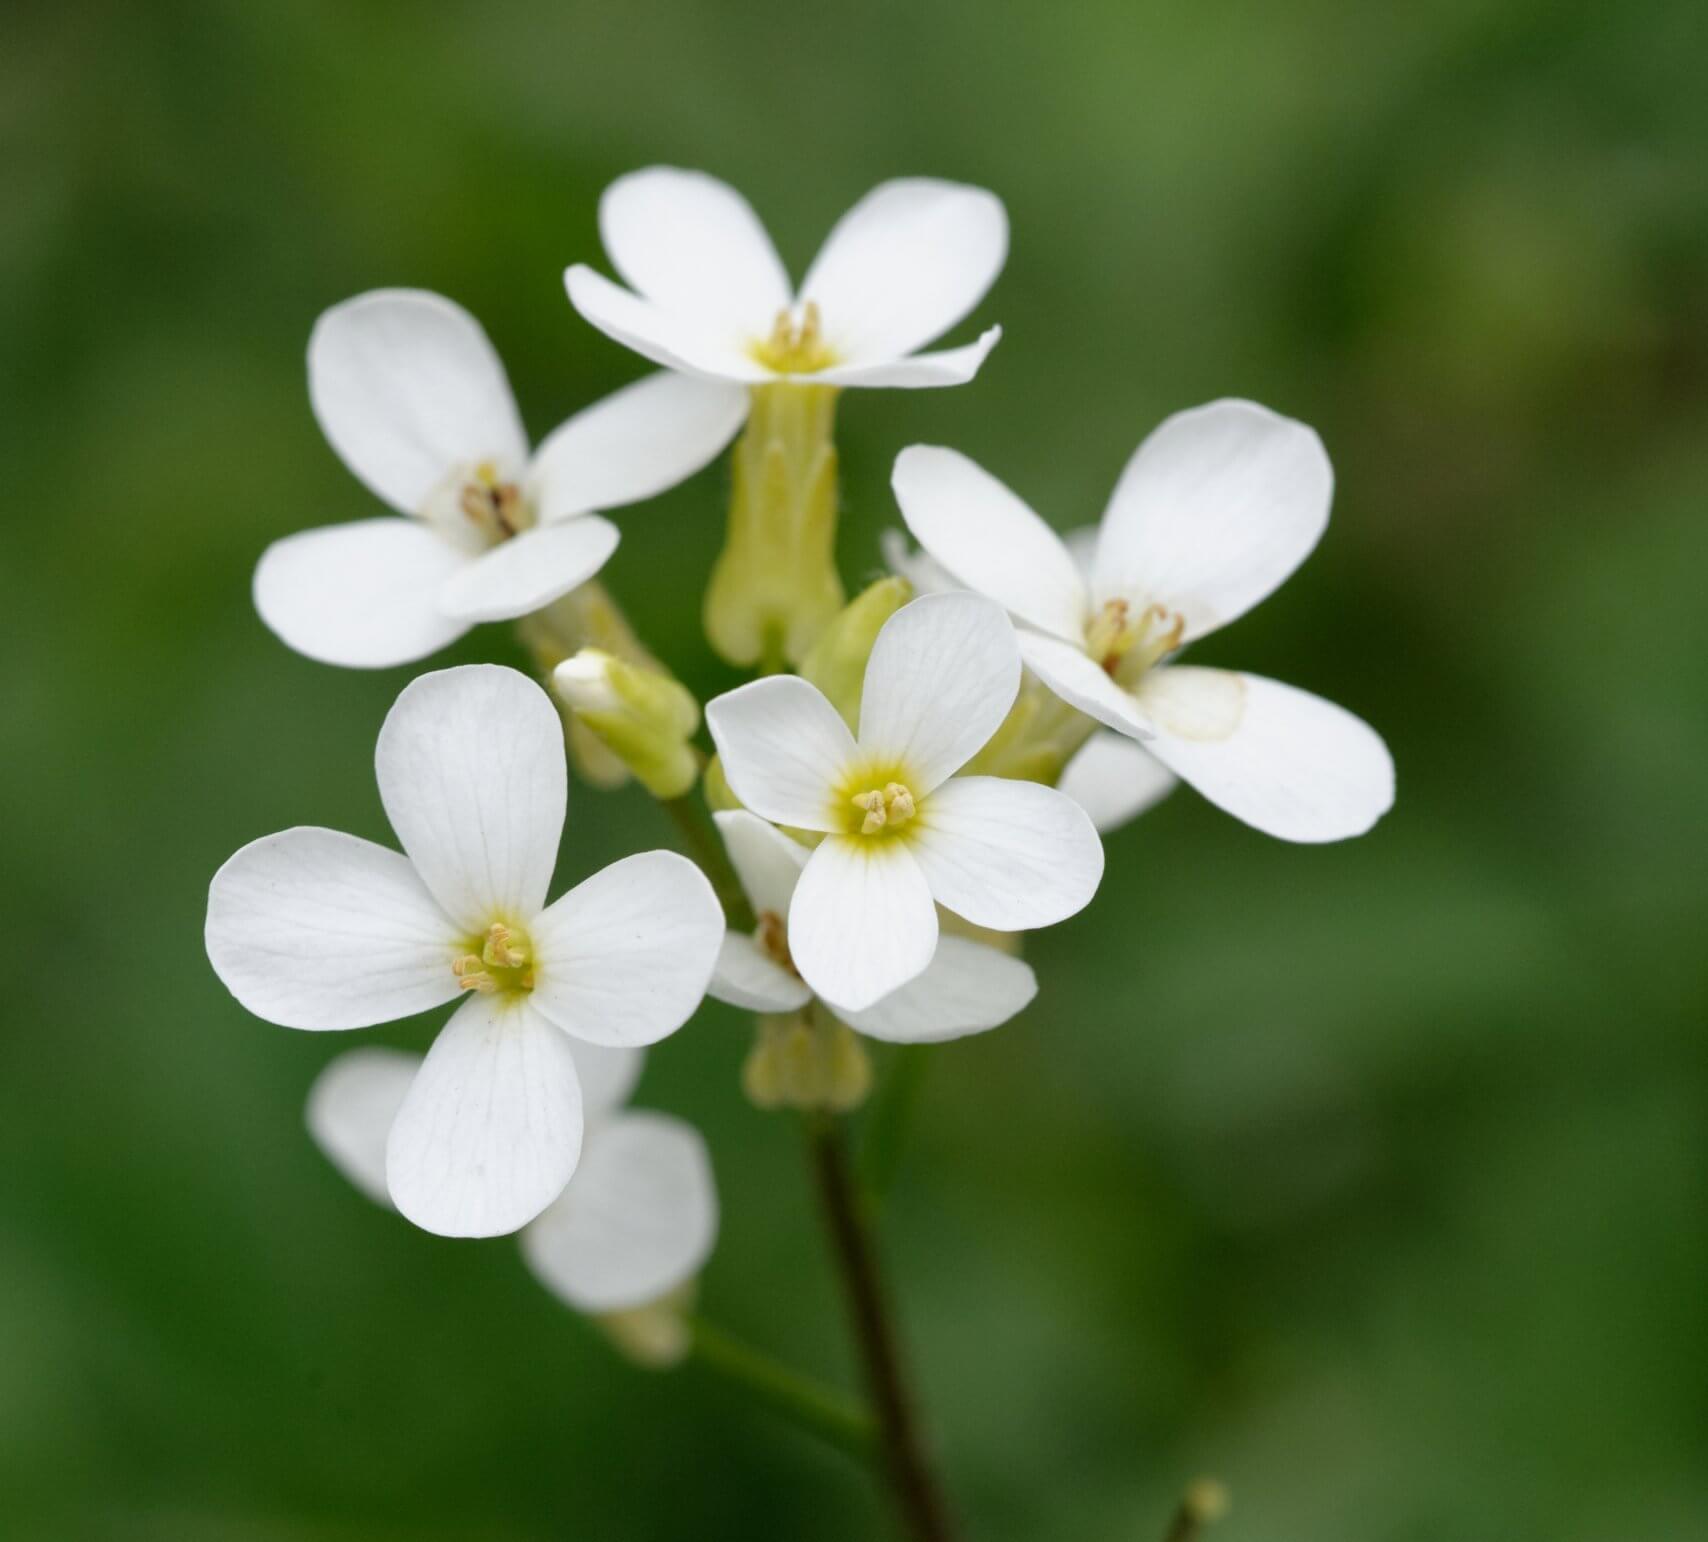 המחקר החדש עסק בצמח התודרנית הלבנה (Arabidopsis thaliana), עשב בעל פרחים לבנים שנפוץ באירופה, באסיה ובצפון אפריקה. צילום: Marie-Lan Nguyen, CC-BY 2.5